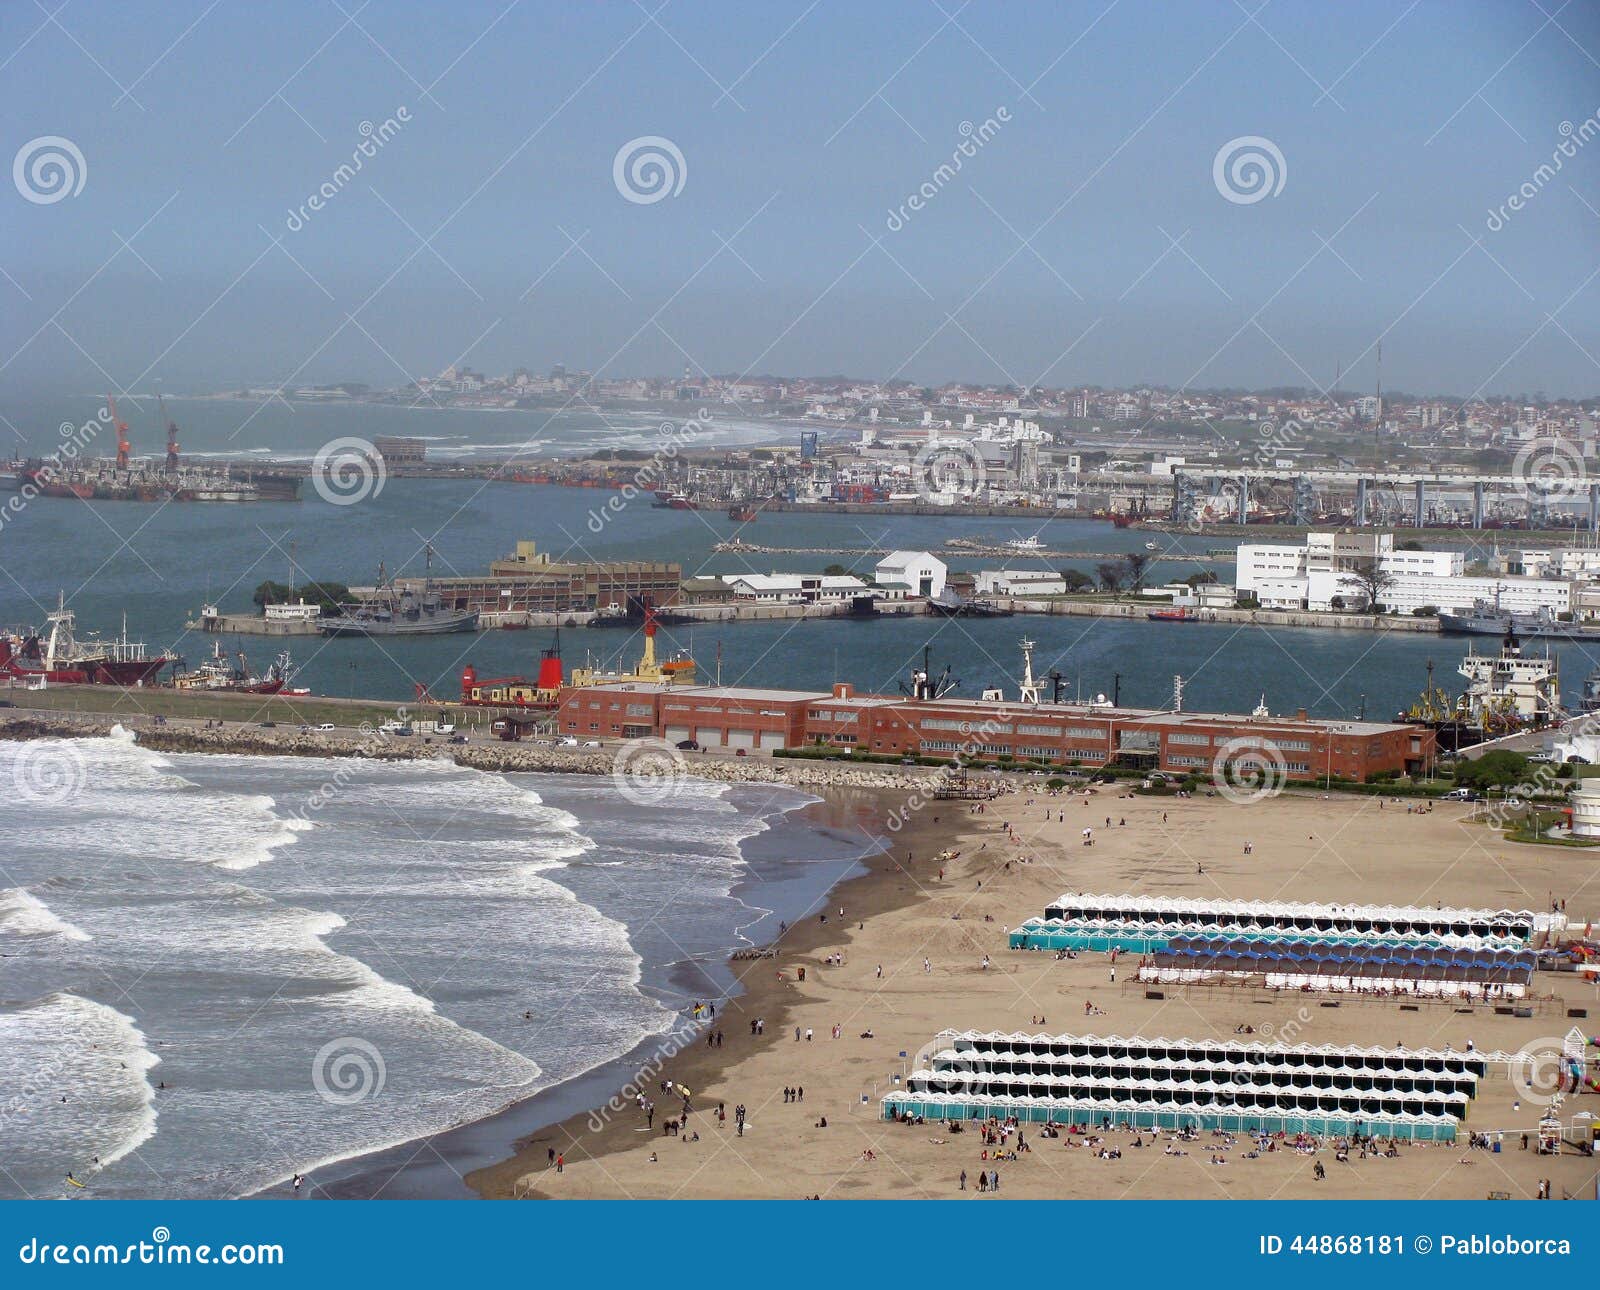 port of mar del plata